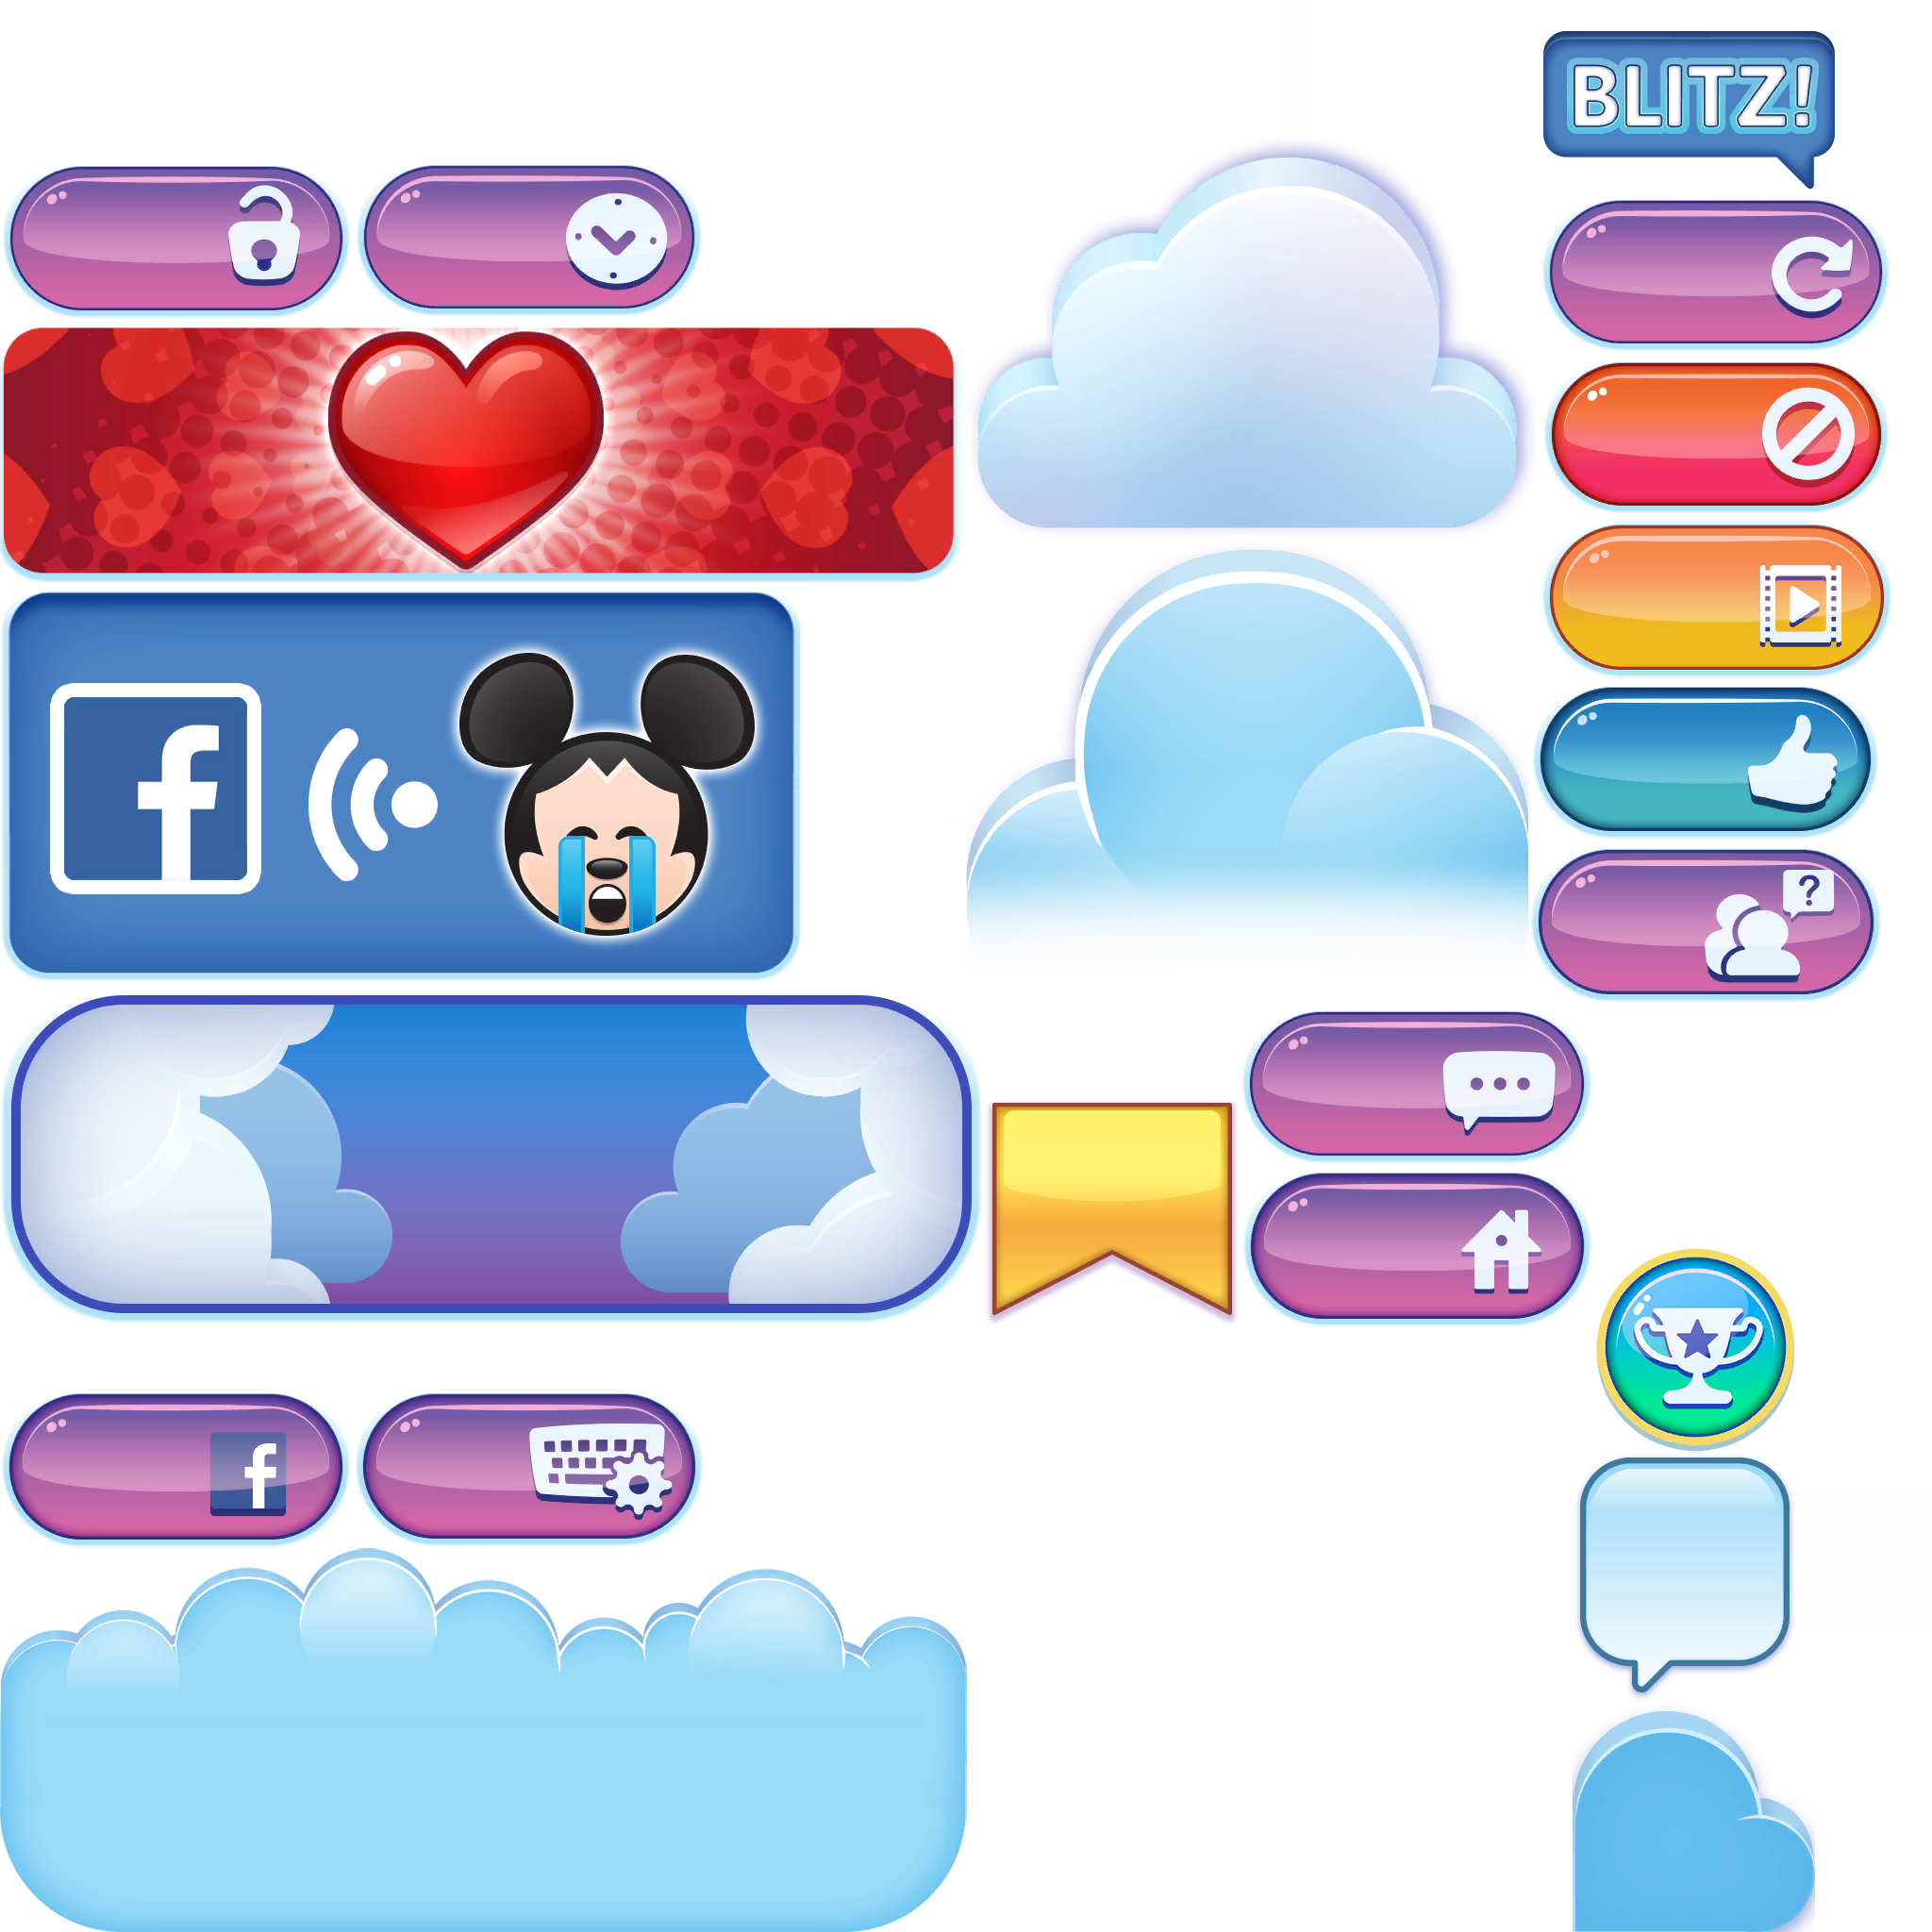 Disney Emoji Blitz - GUI (04/04)